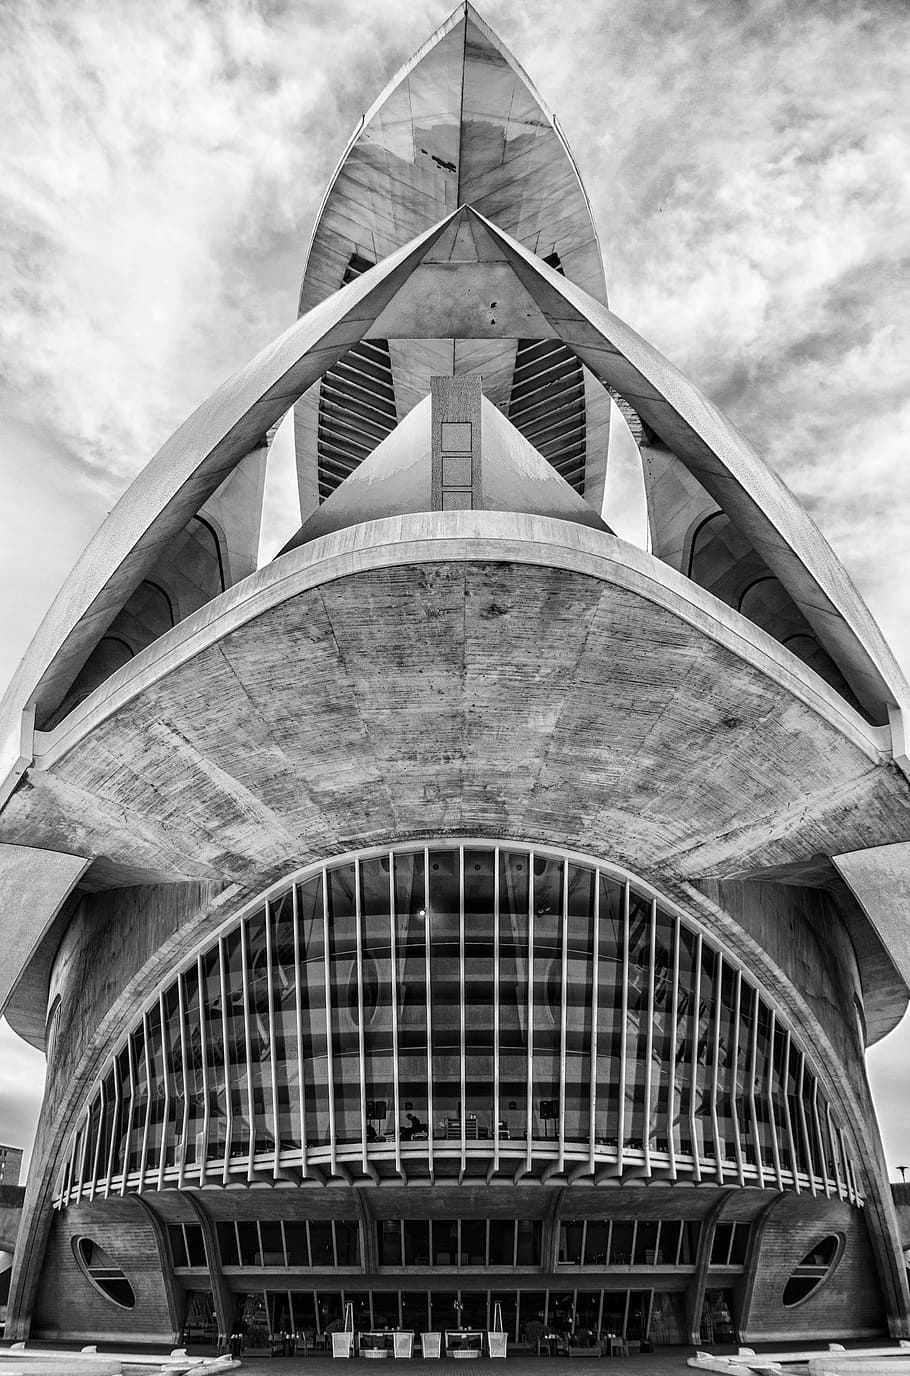 cac, city of sciences, calatrava, valencia, black and white